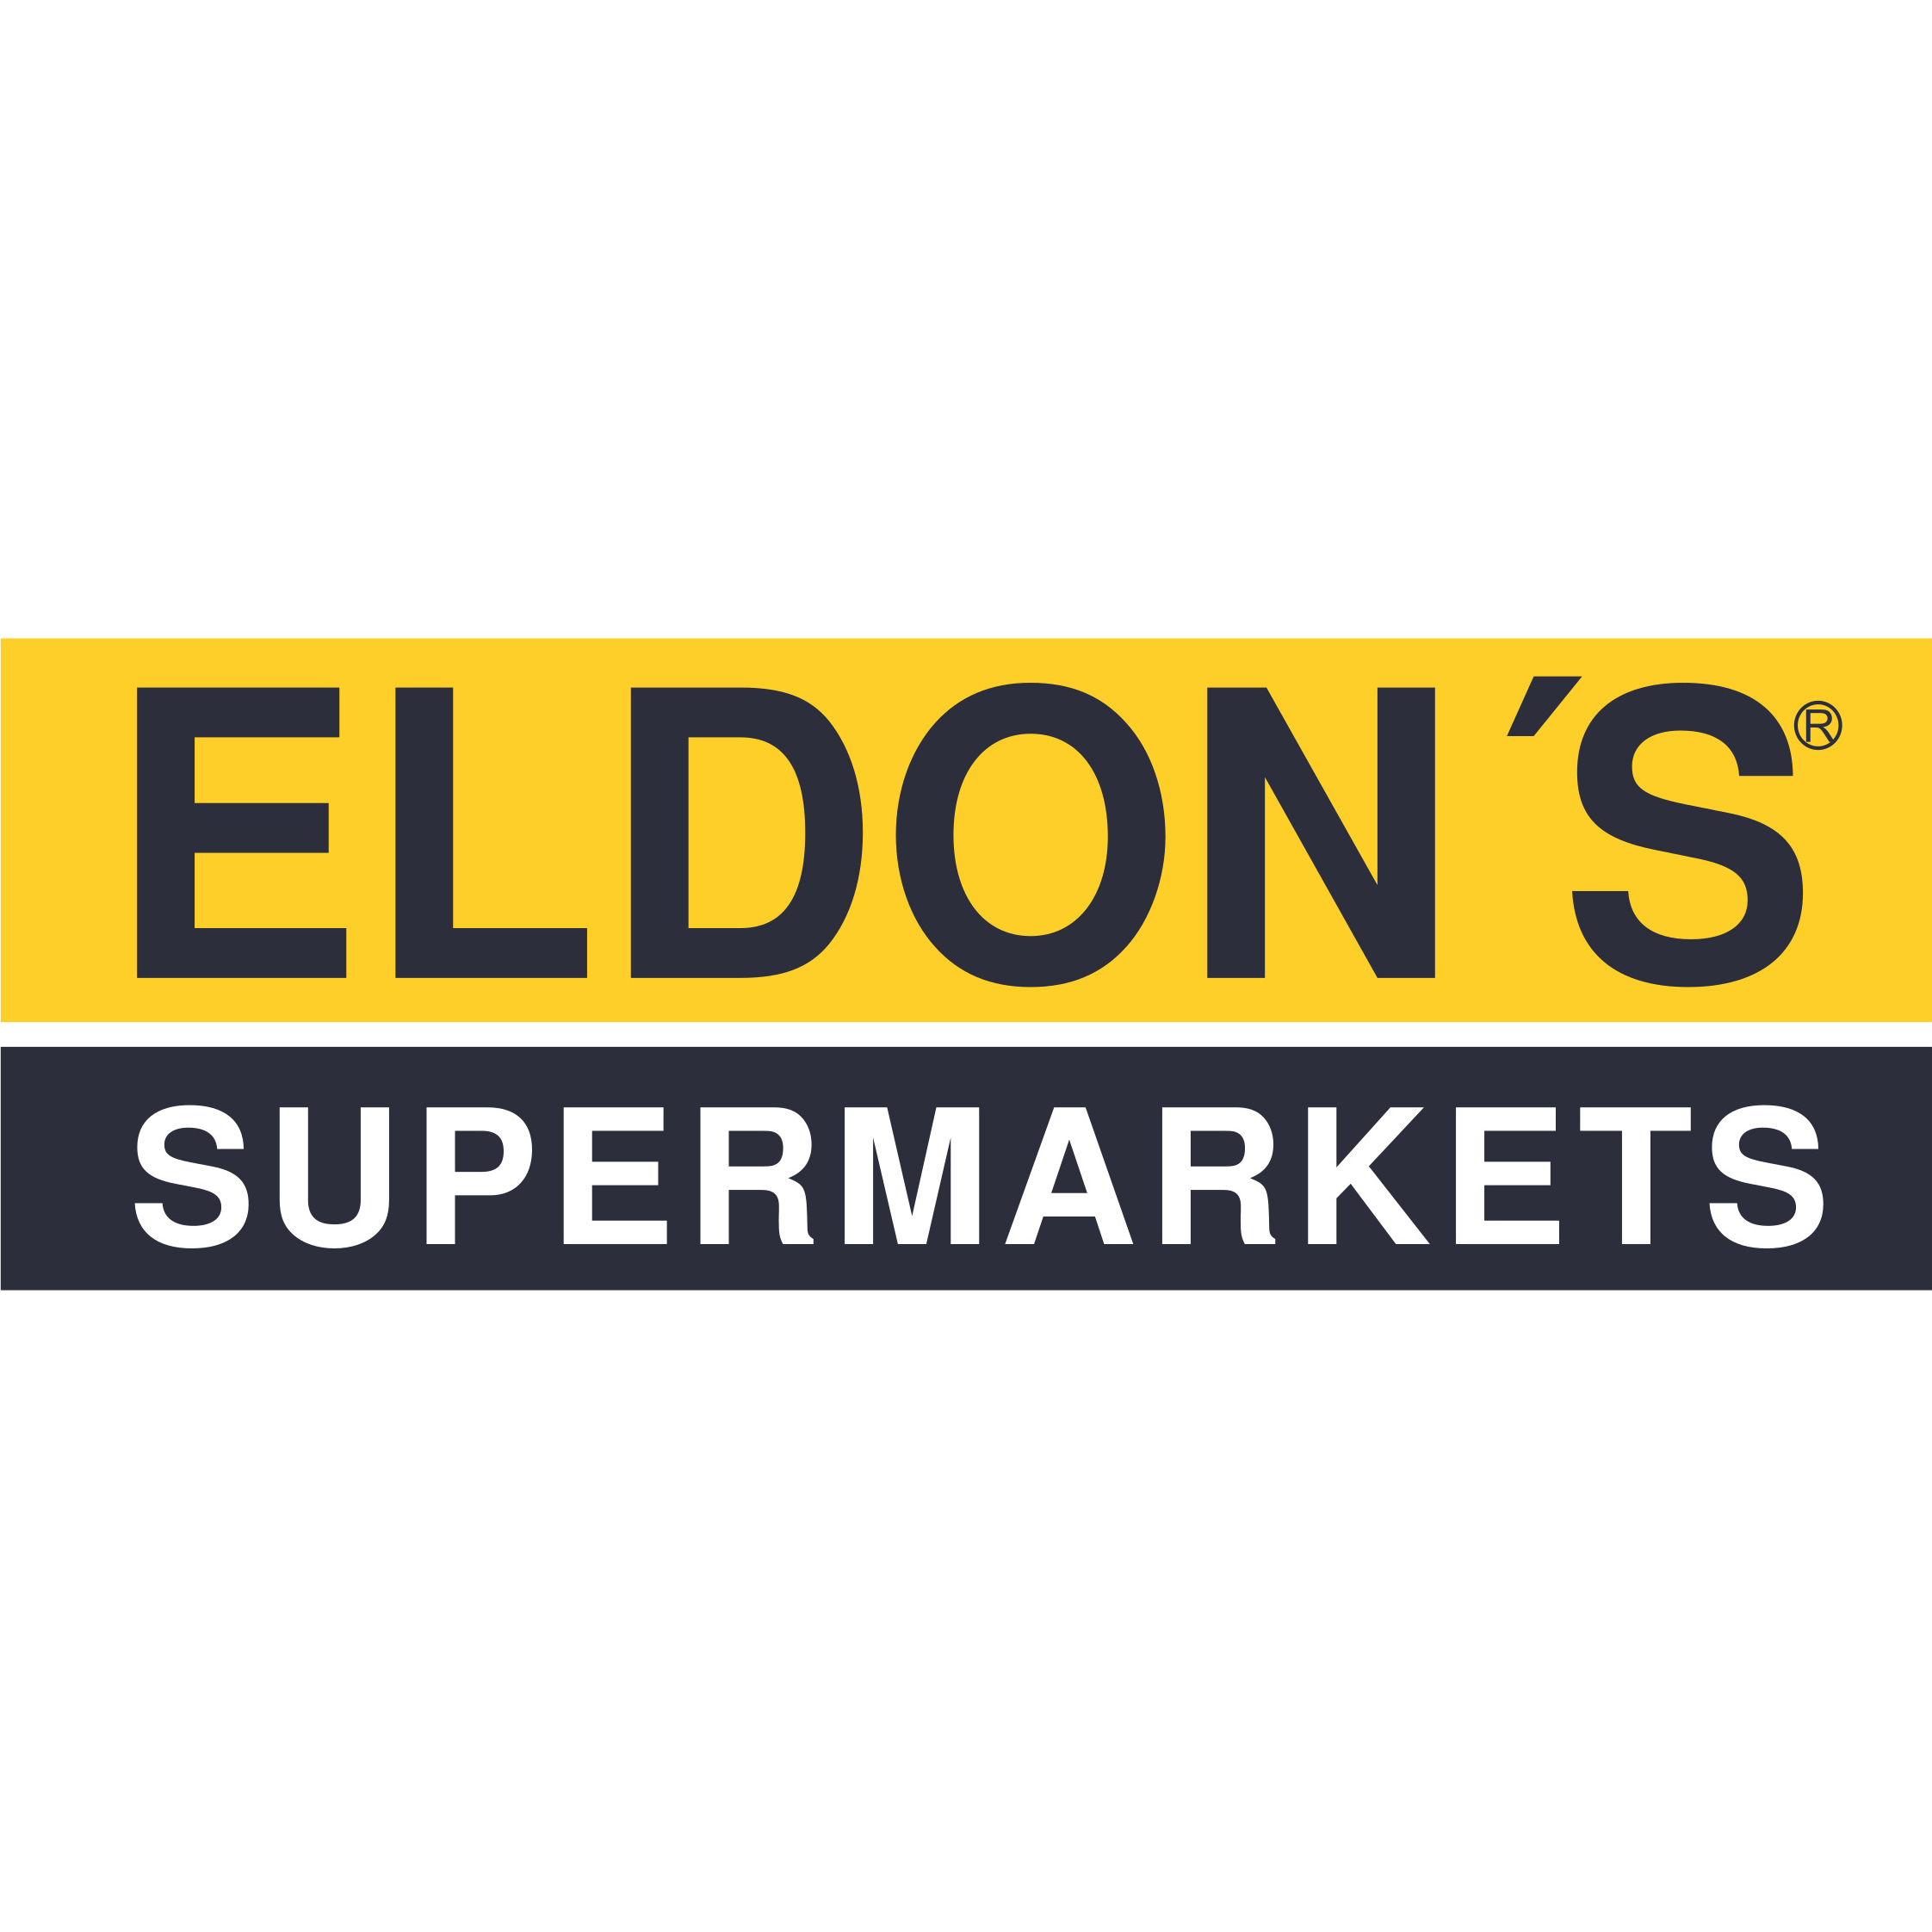 Eldon’s supermarkerts